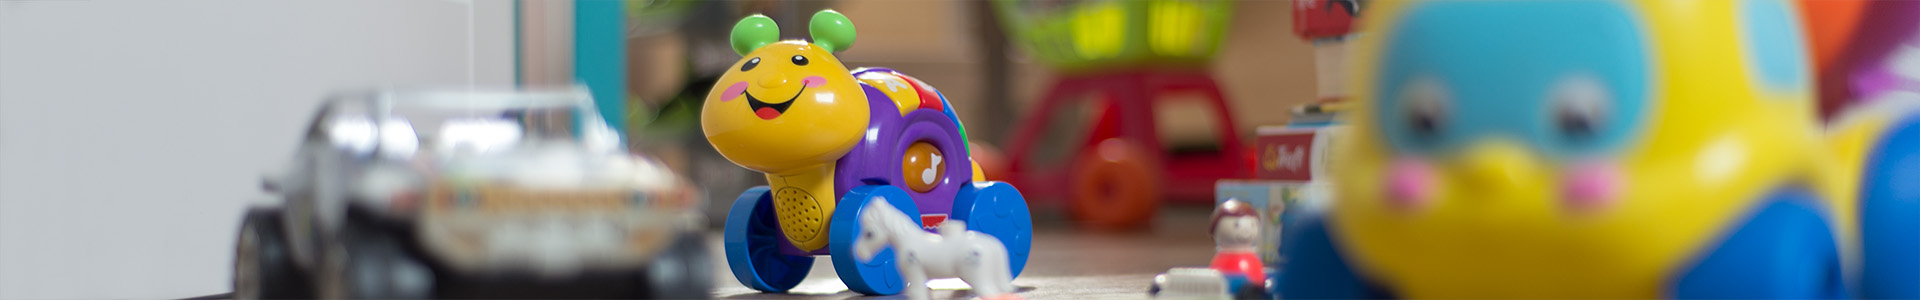 Andes Maak een bed Vol Tweedehands speelgoed online kopen